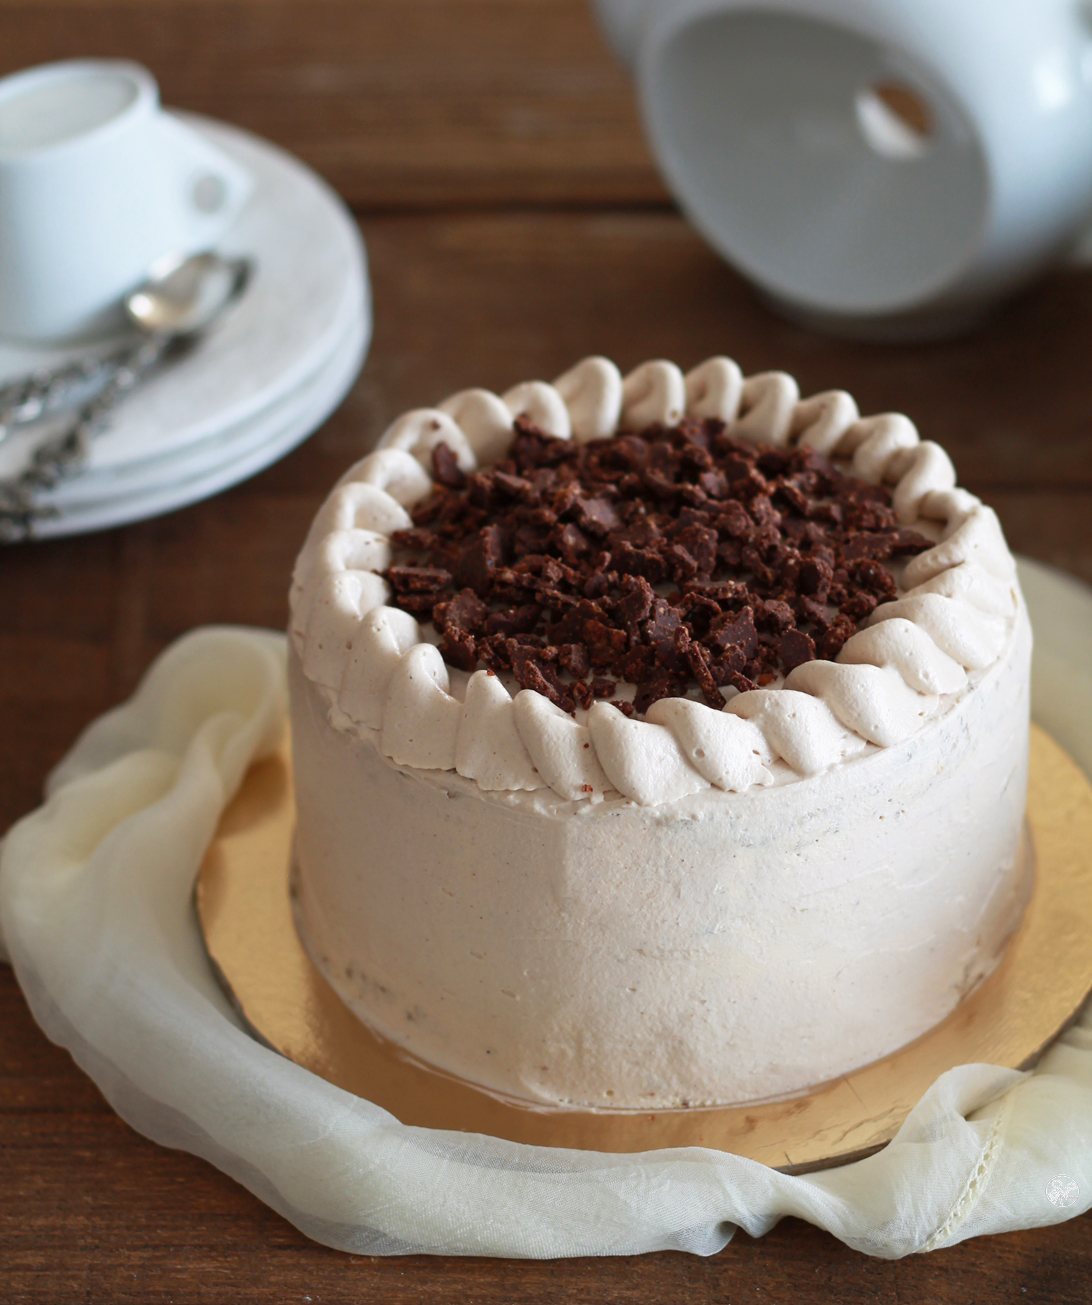 Chiffon cake al caffè e caramello senza glutine - La Cassata Celiaca